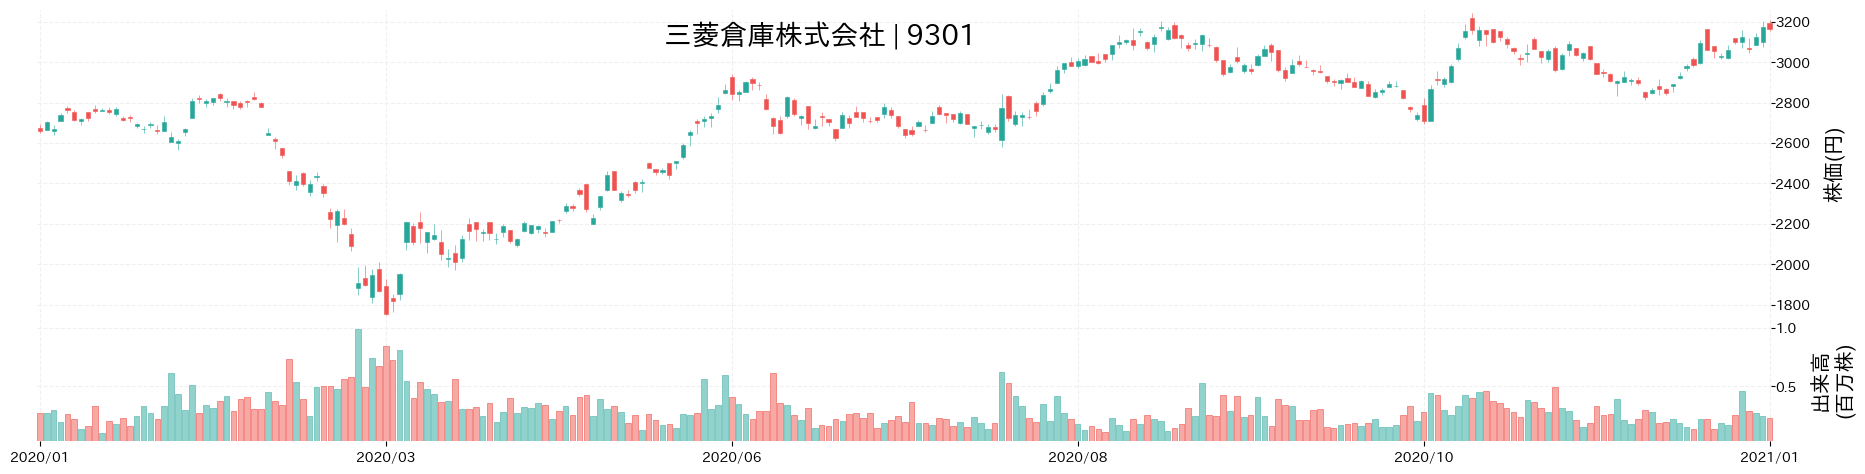 三菱倉庫の株価推移(2020)